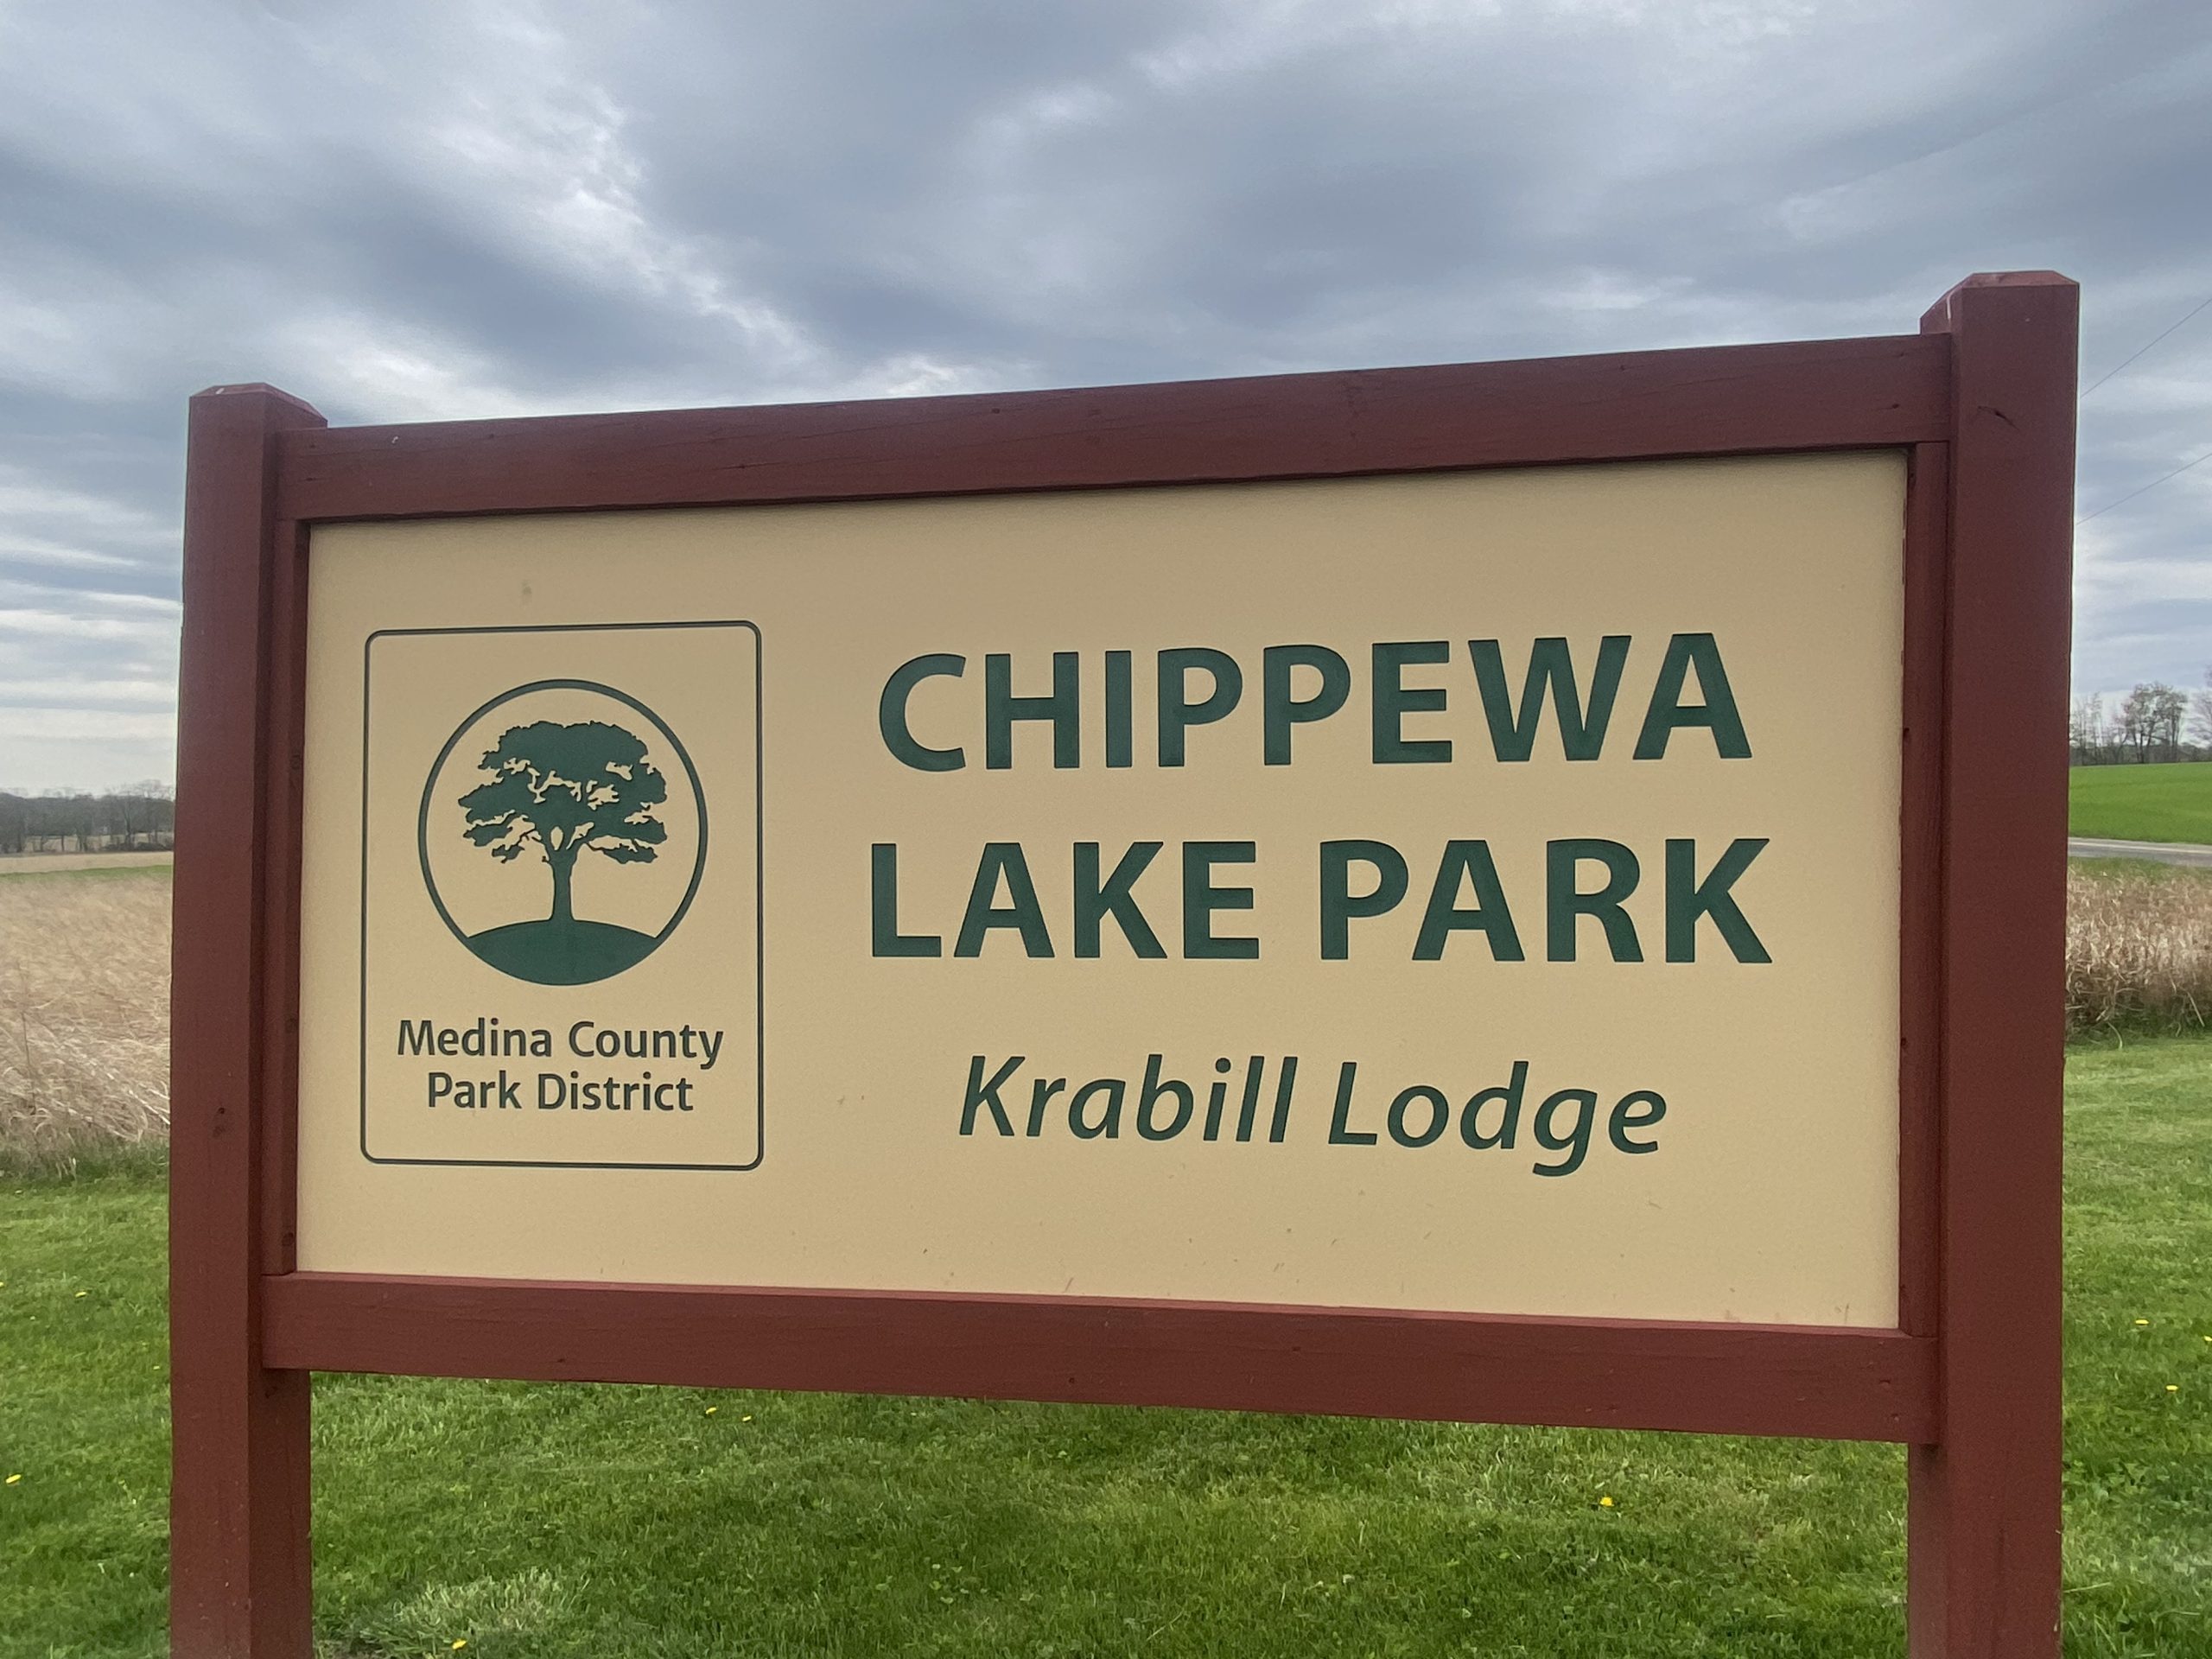 Discover Krabill Lodge at Chippewa Lake